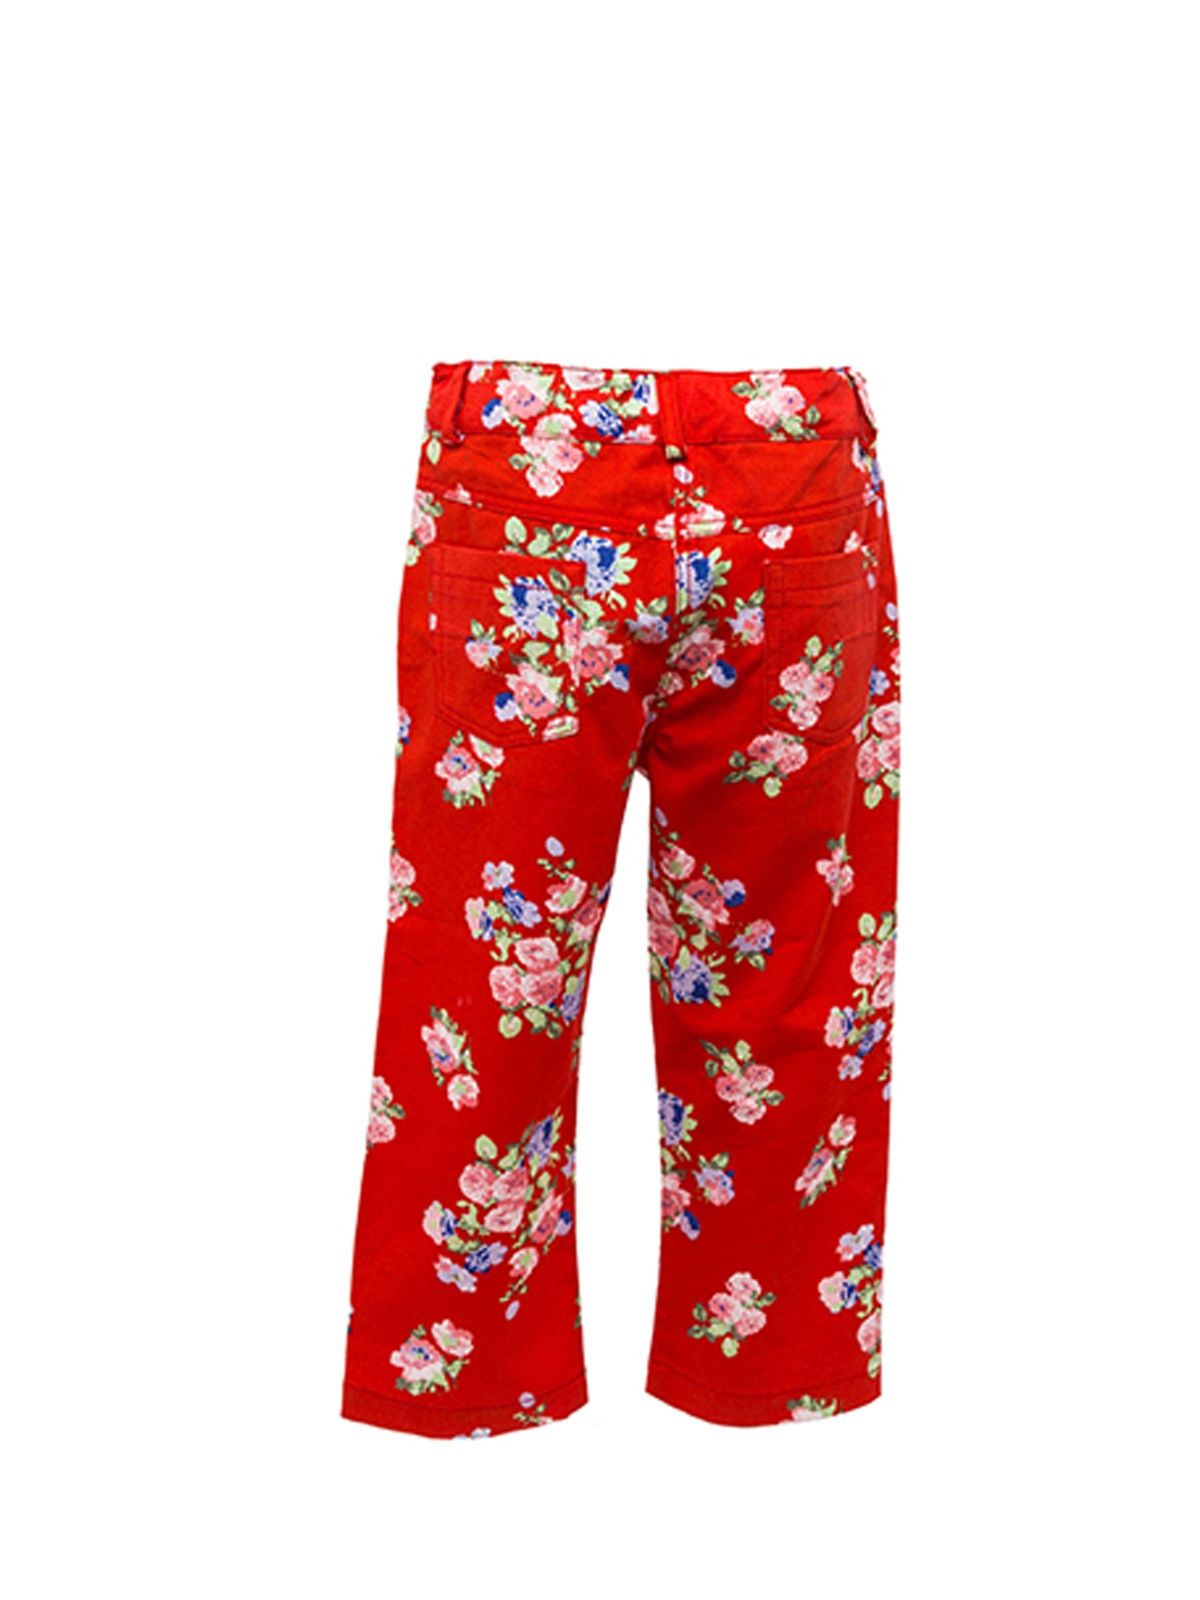 Kız Çocuk Kırmızı Çiçek Baskılı Pantolon (5-12yaş)